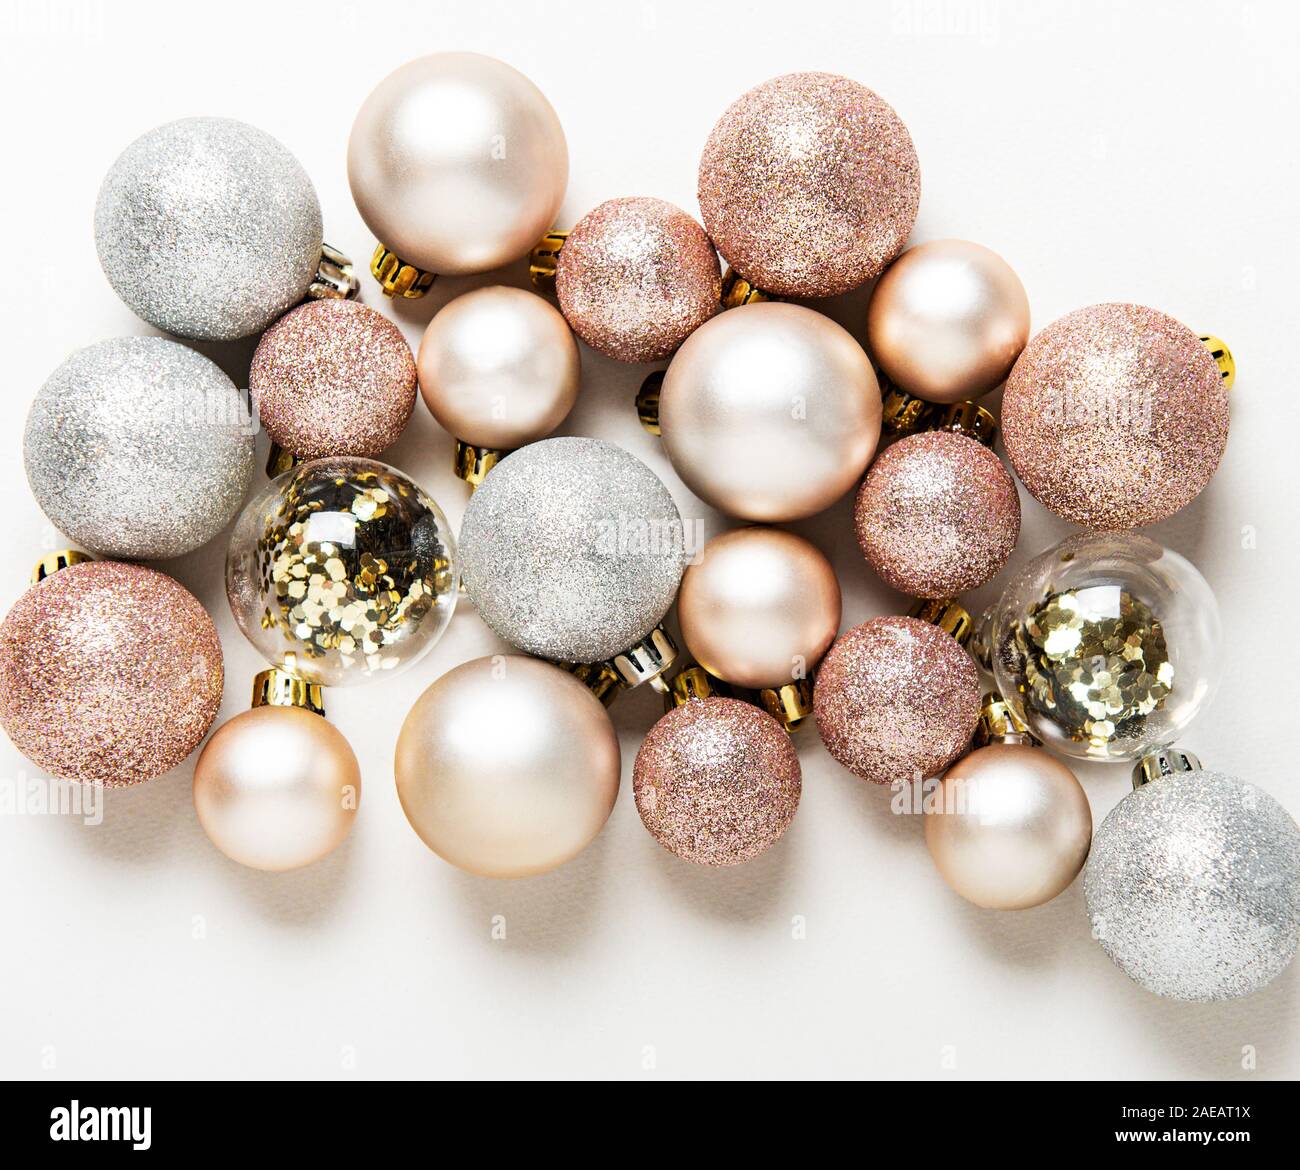 Weihnachtskugeln Hintergrund. Rose Gold und Silber Spielzeug Kugeln auf  weißen Hintergrund. Festliche Dekoration, Flach, Ansicht von oben  Stockfotografie - Alamy